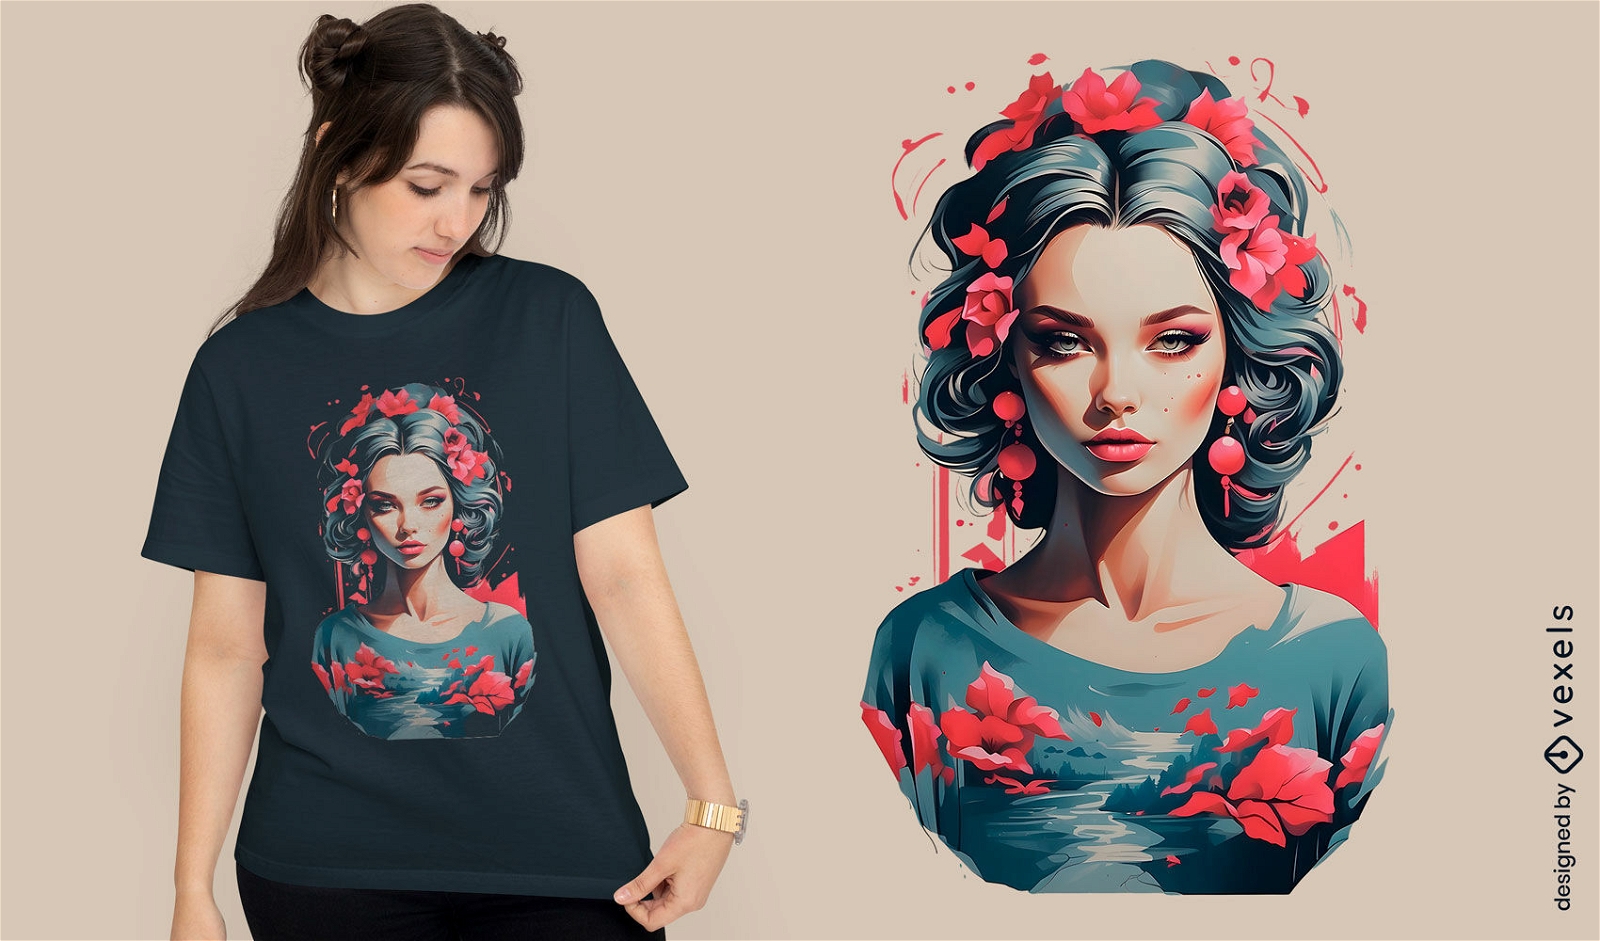 Floral river woman t-shirt design